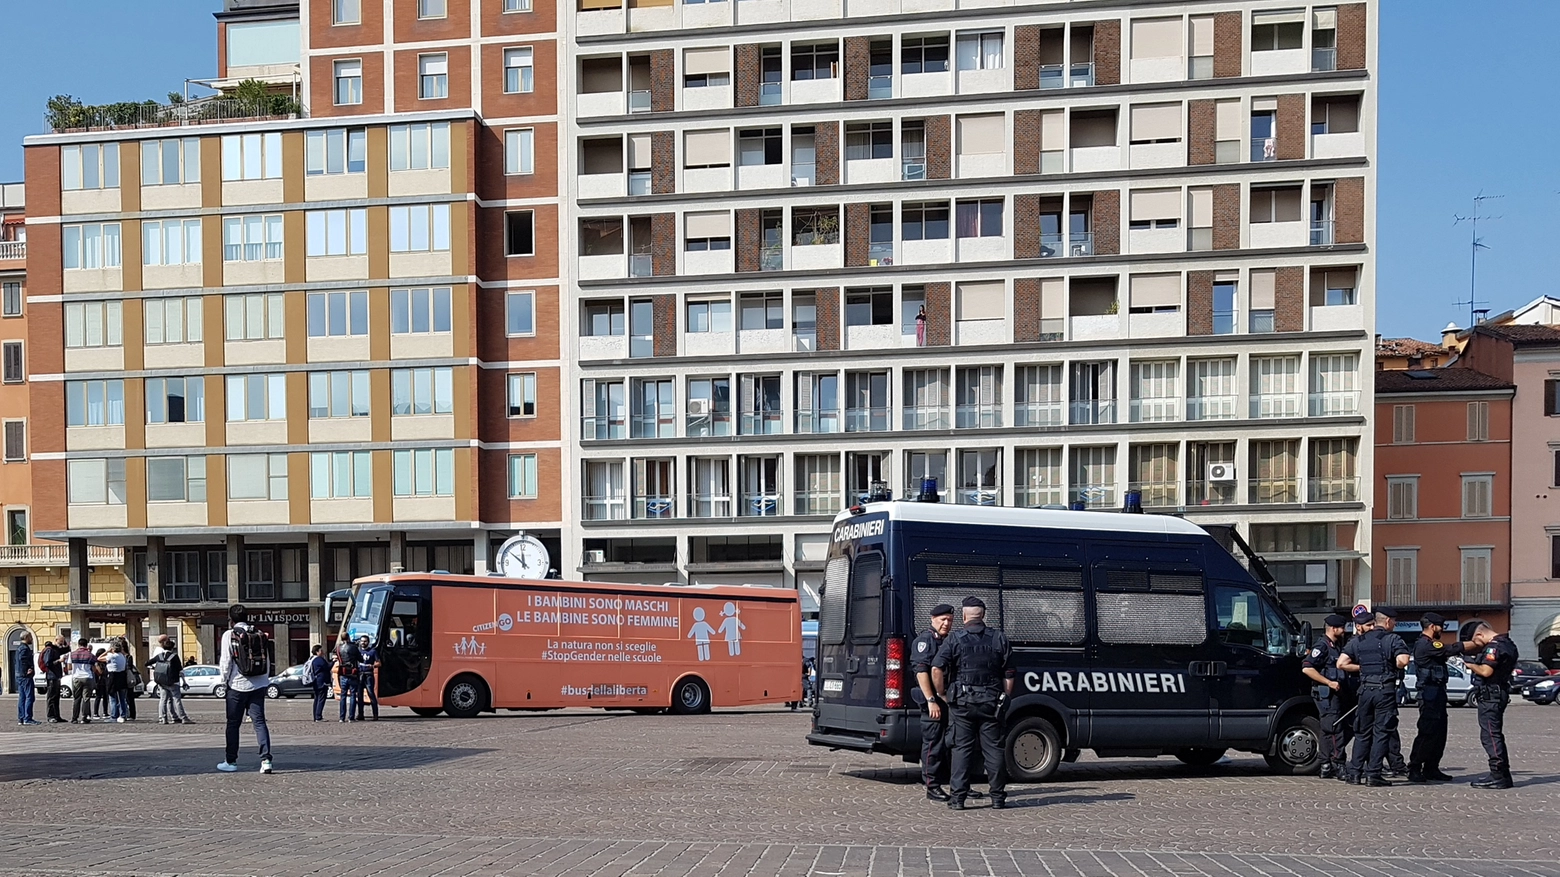 Il bus in piazza VIII Agosto scortato dalle forze dell'ordine